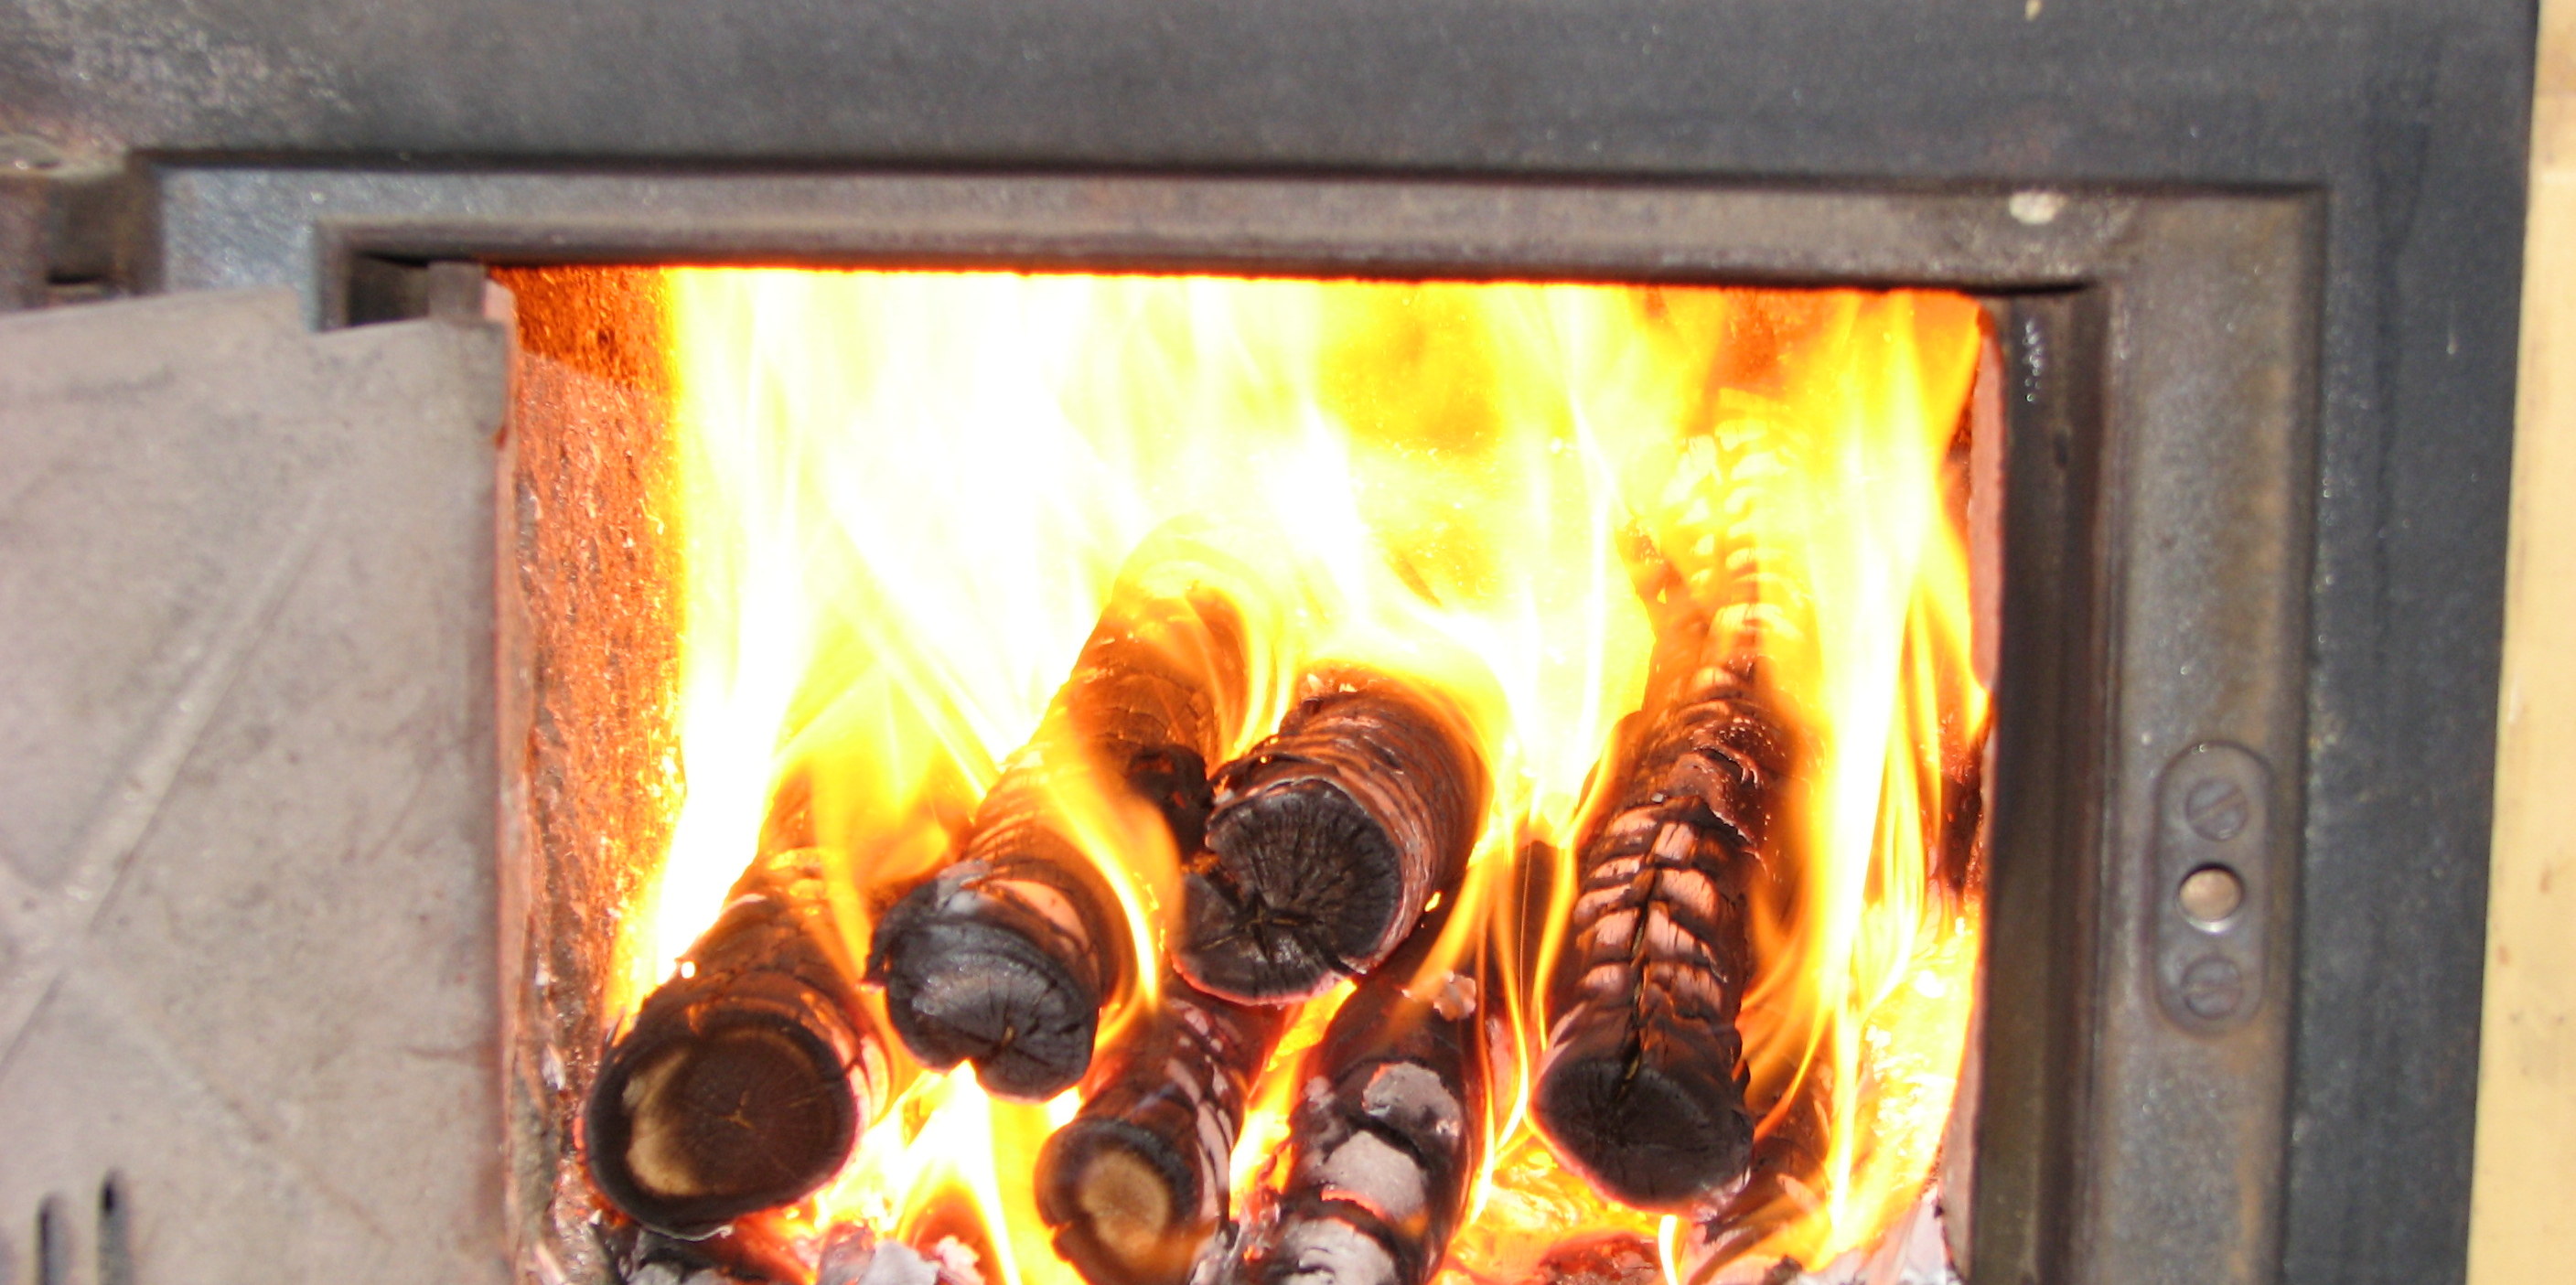 Ofene Kachelofenklappe mit brennenden Holzstücken